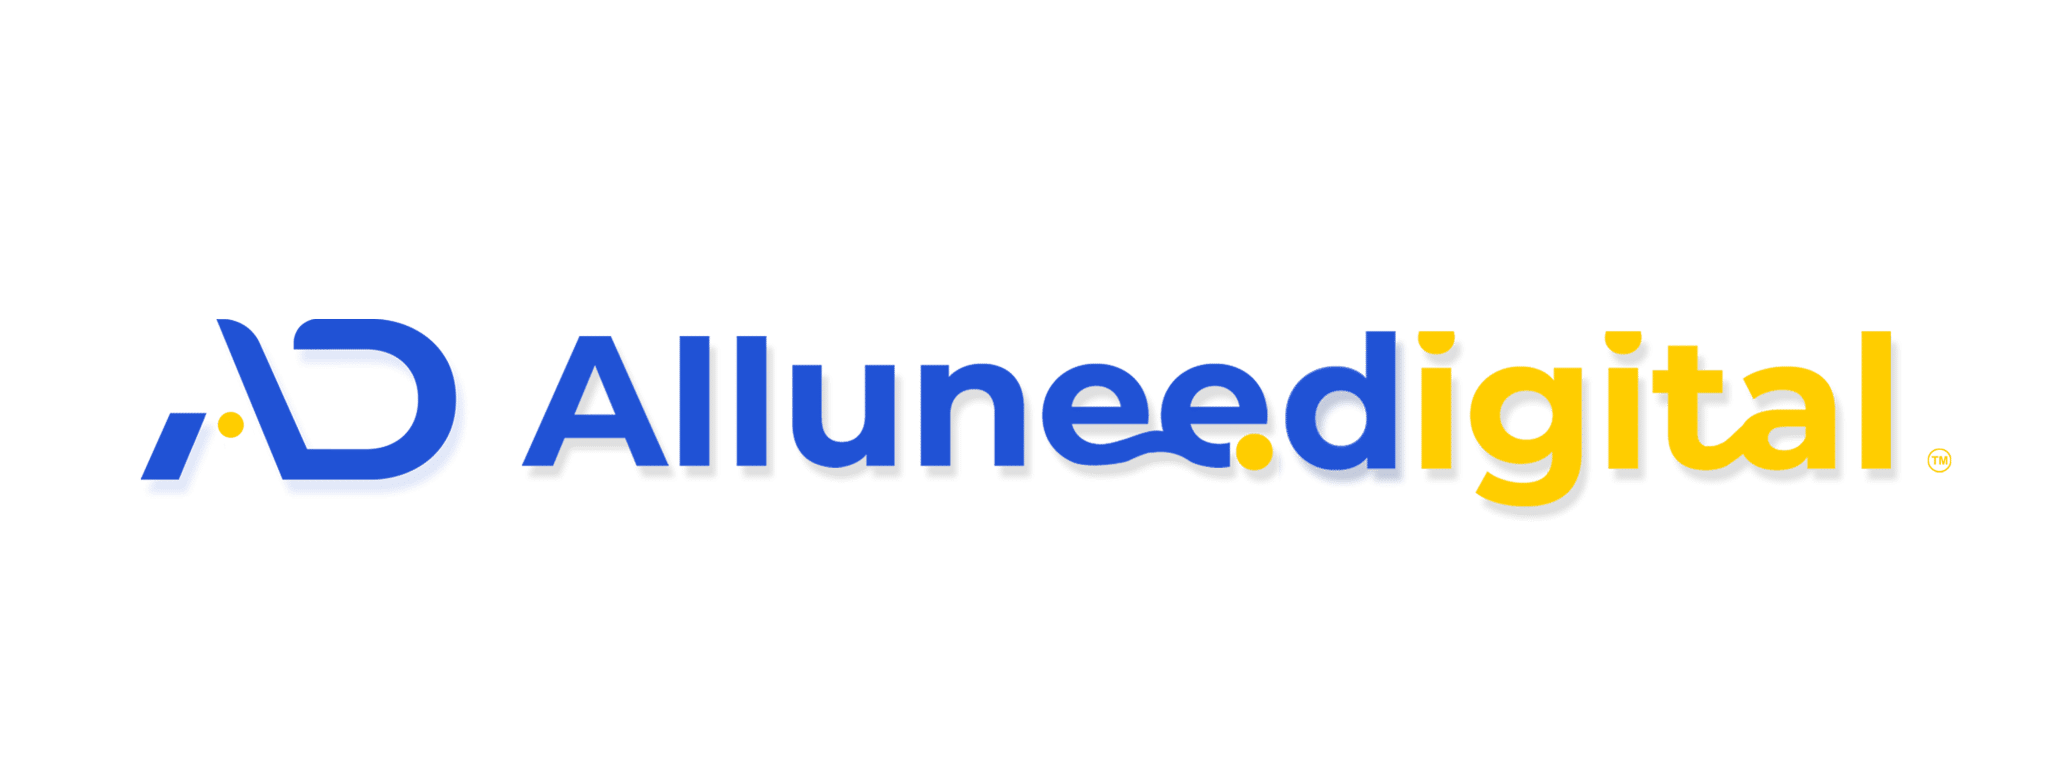 alluneed digital indonesia